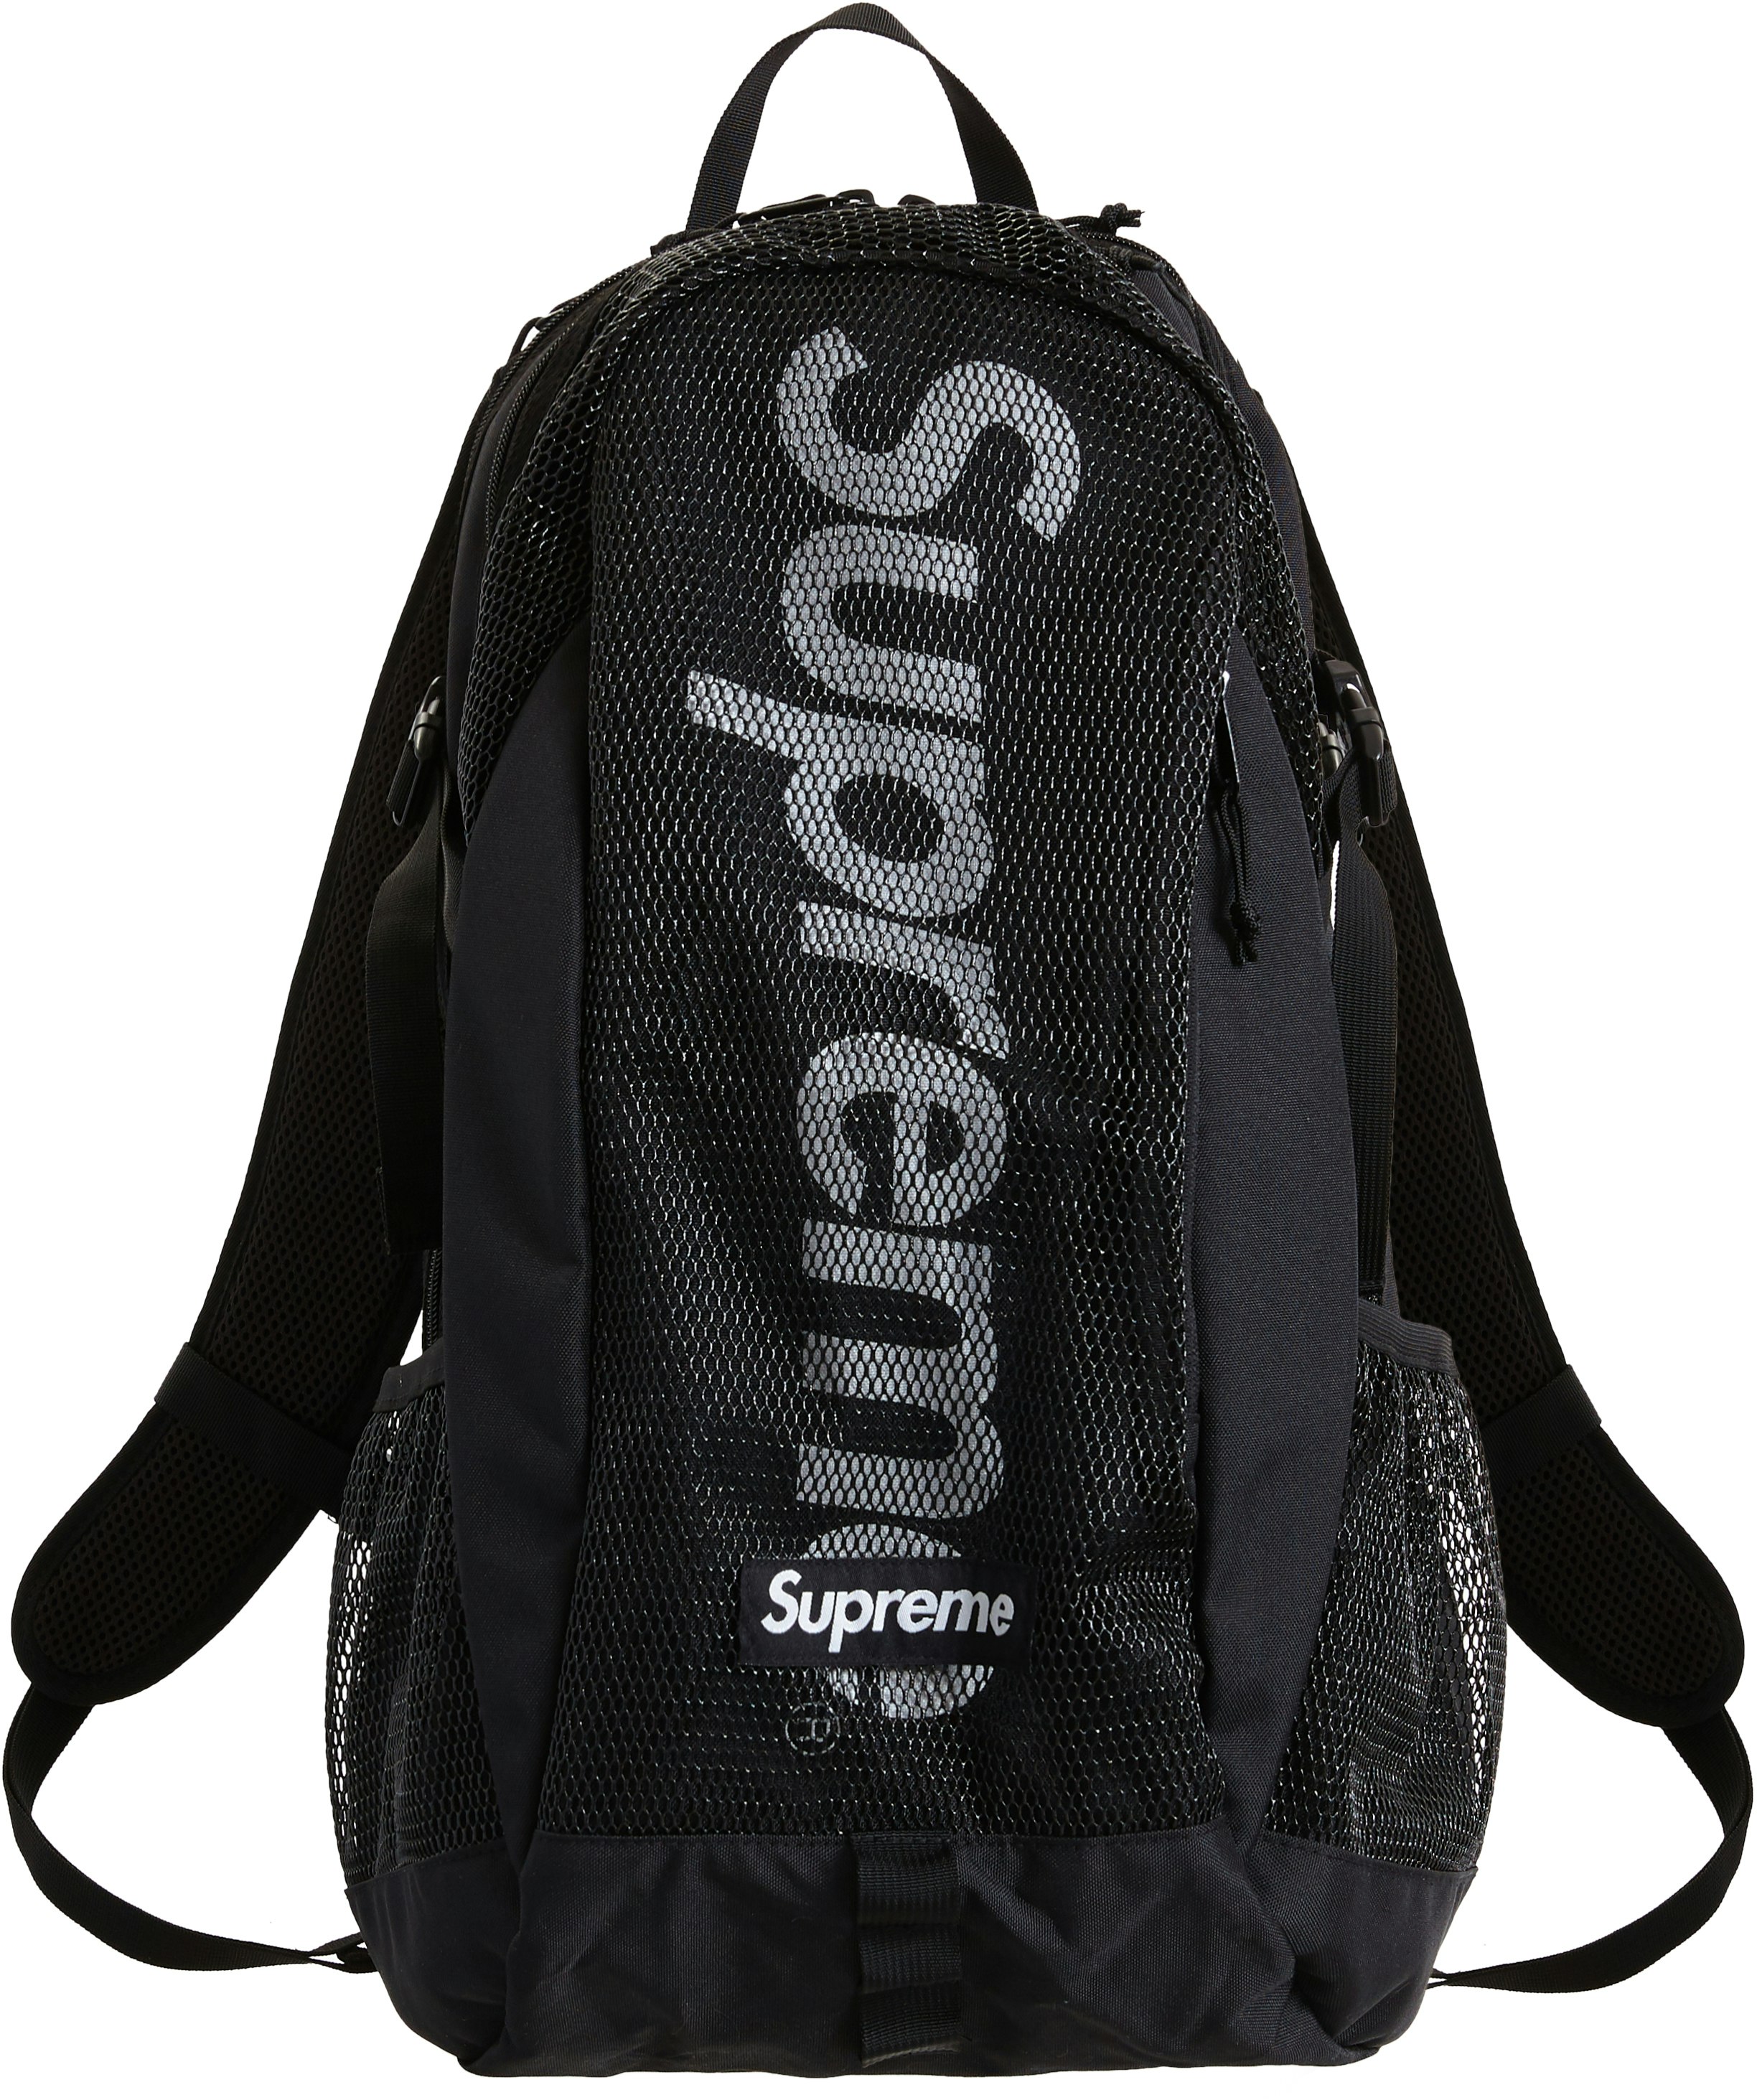 SOLD) Supreme SS20 Backpack (SOLD)  Black backpack, Supreme bag, Backpacks